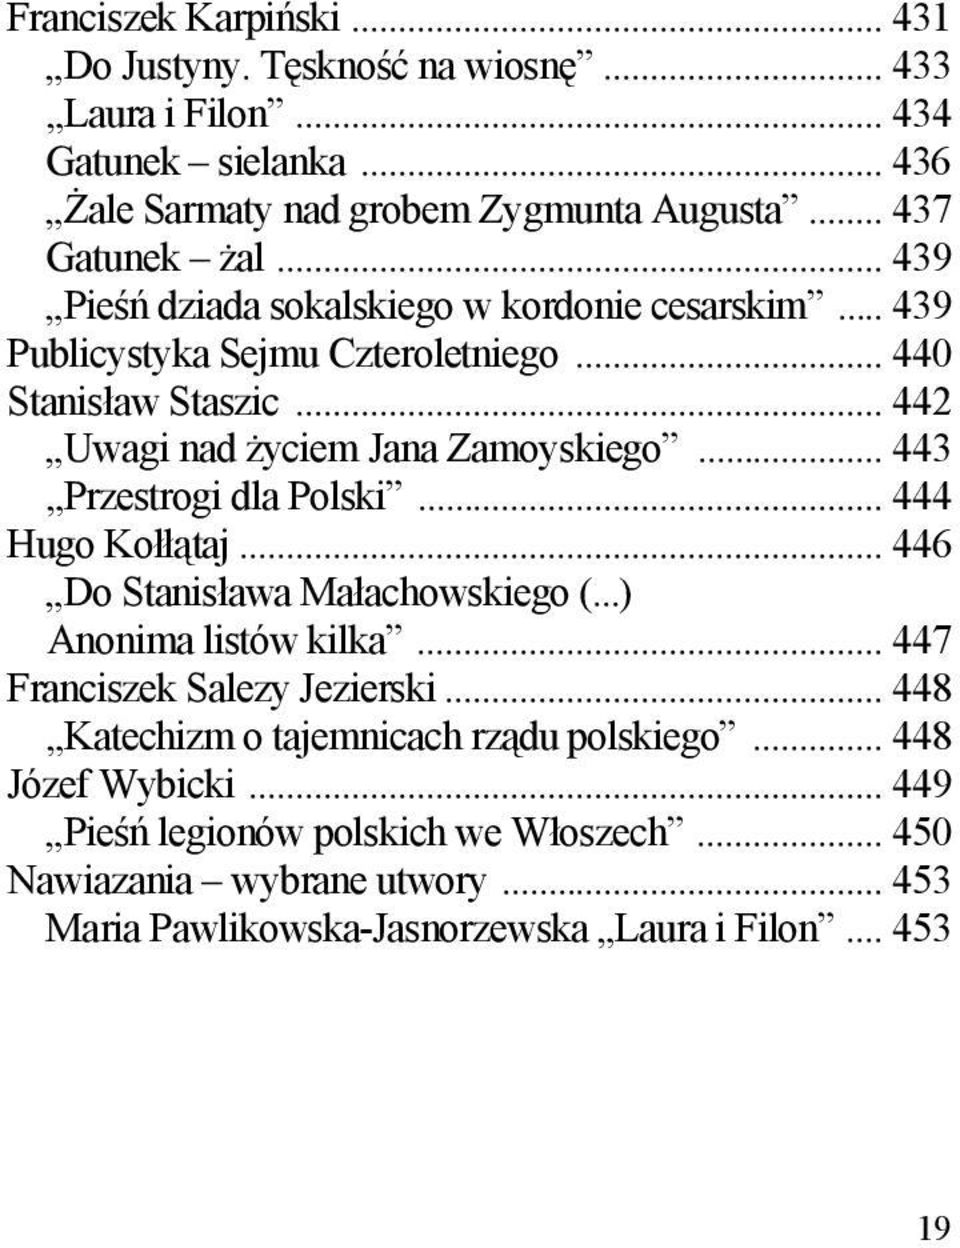 .. 443 Przestrogi dla Polski... 444 Hugo Kołłątaj... 446 Do Stanisława Małachowskiego (...) Anonima listów kilka... 447 Franciszek Salezy Jezierski.